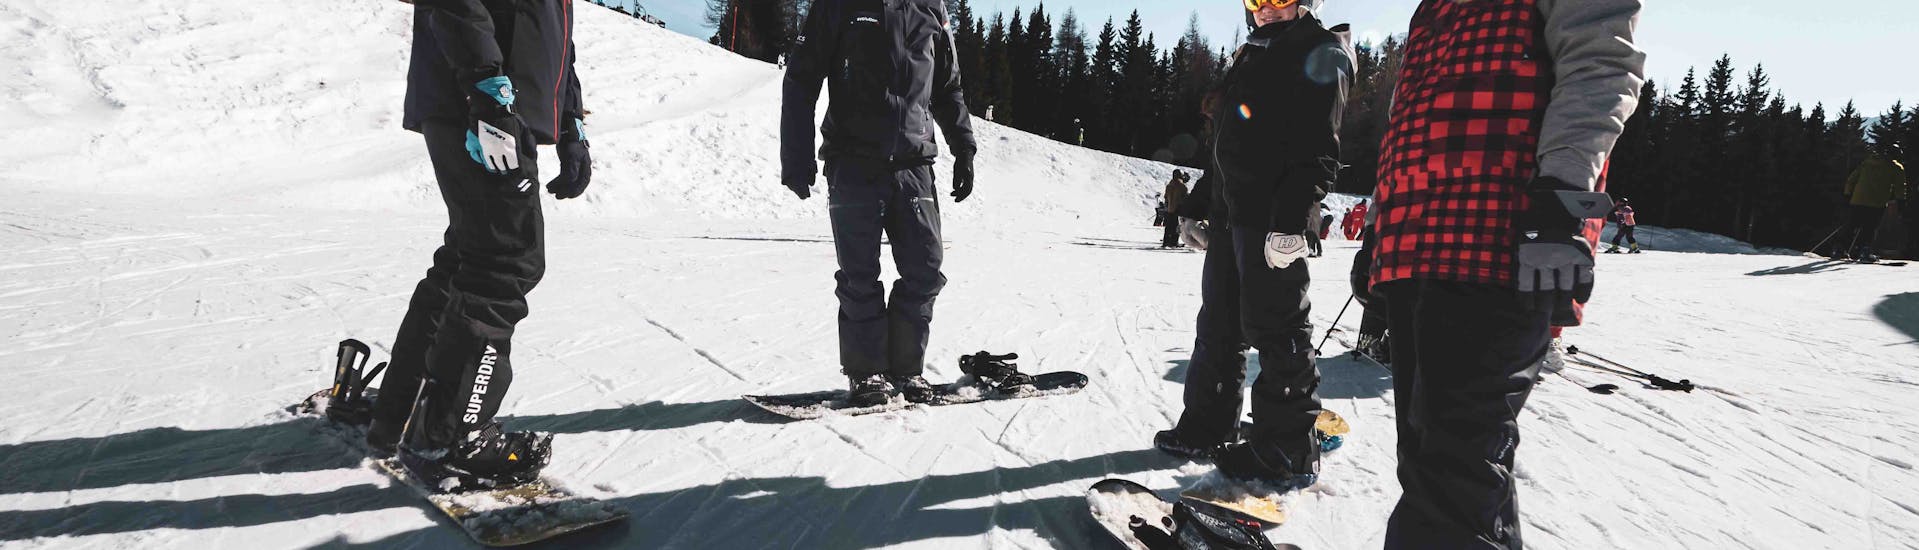 Snowboardlessen (vanaf 10 jaar) - Arc 1800 met Arc Aventures by Evolution 2 1800 .